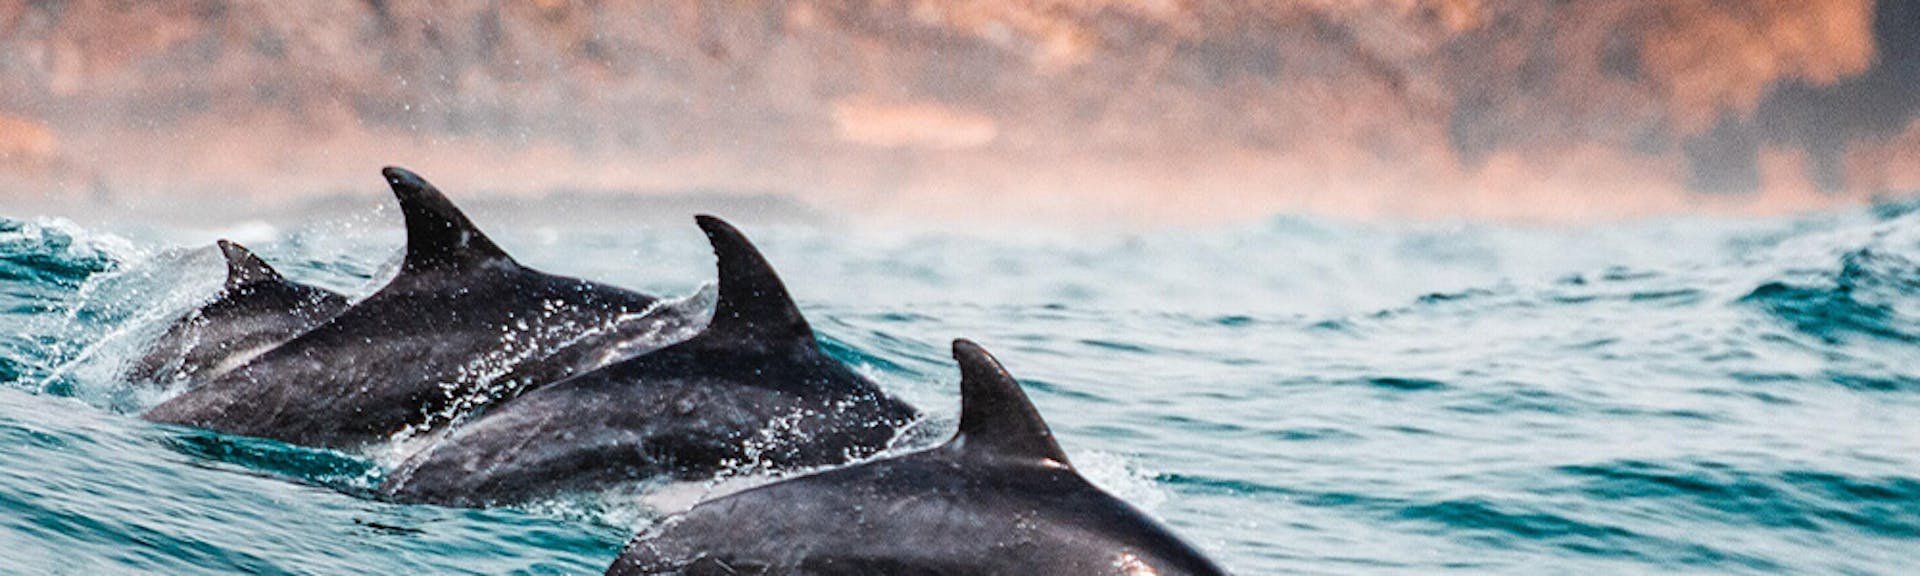 Sustainability - Dolphins Image